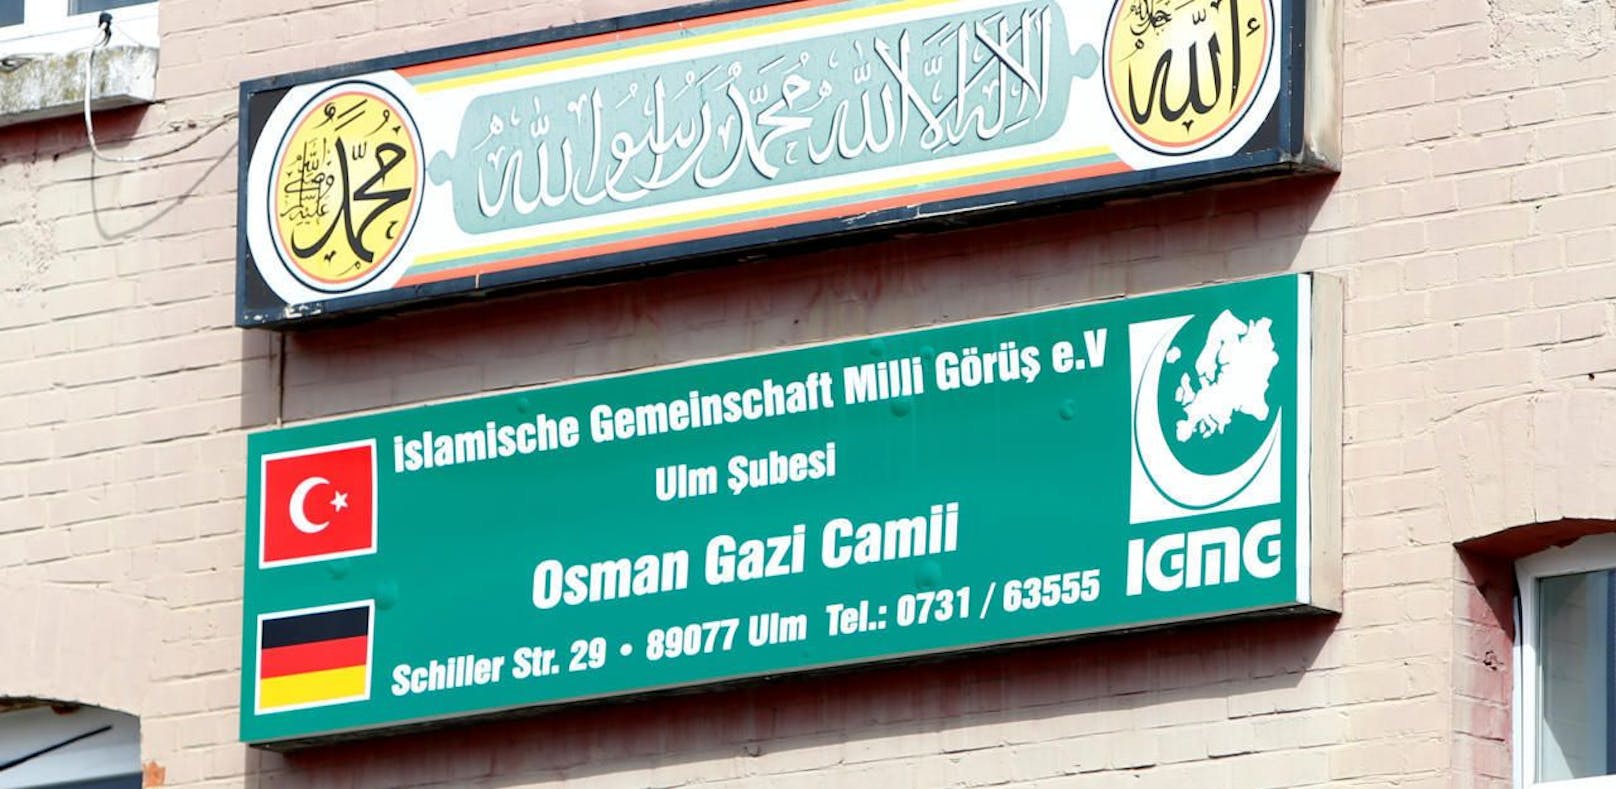 Ein Schild für die Islamische Gemeinschaft Milli Görüs (IGMIG) in Ulm